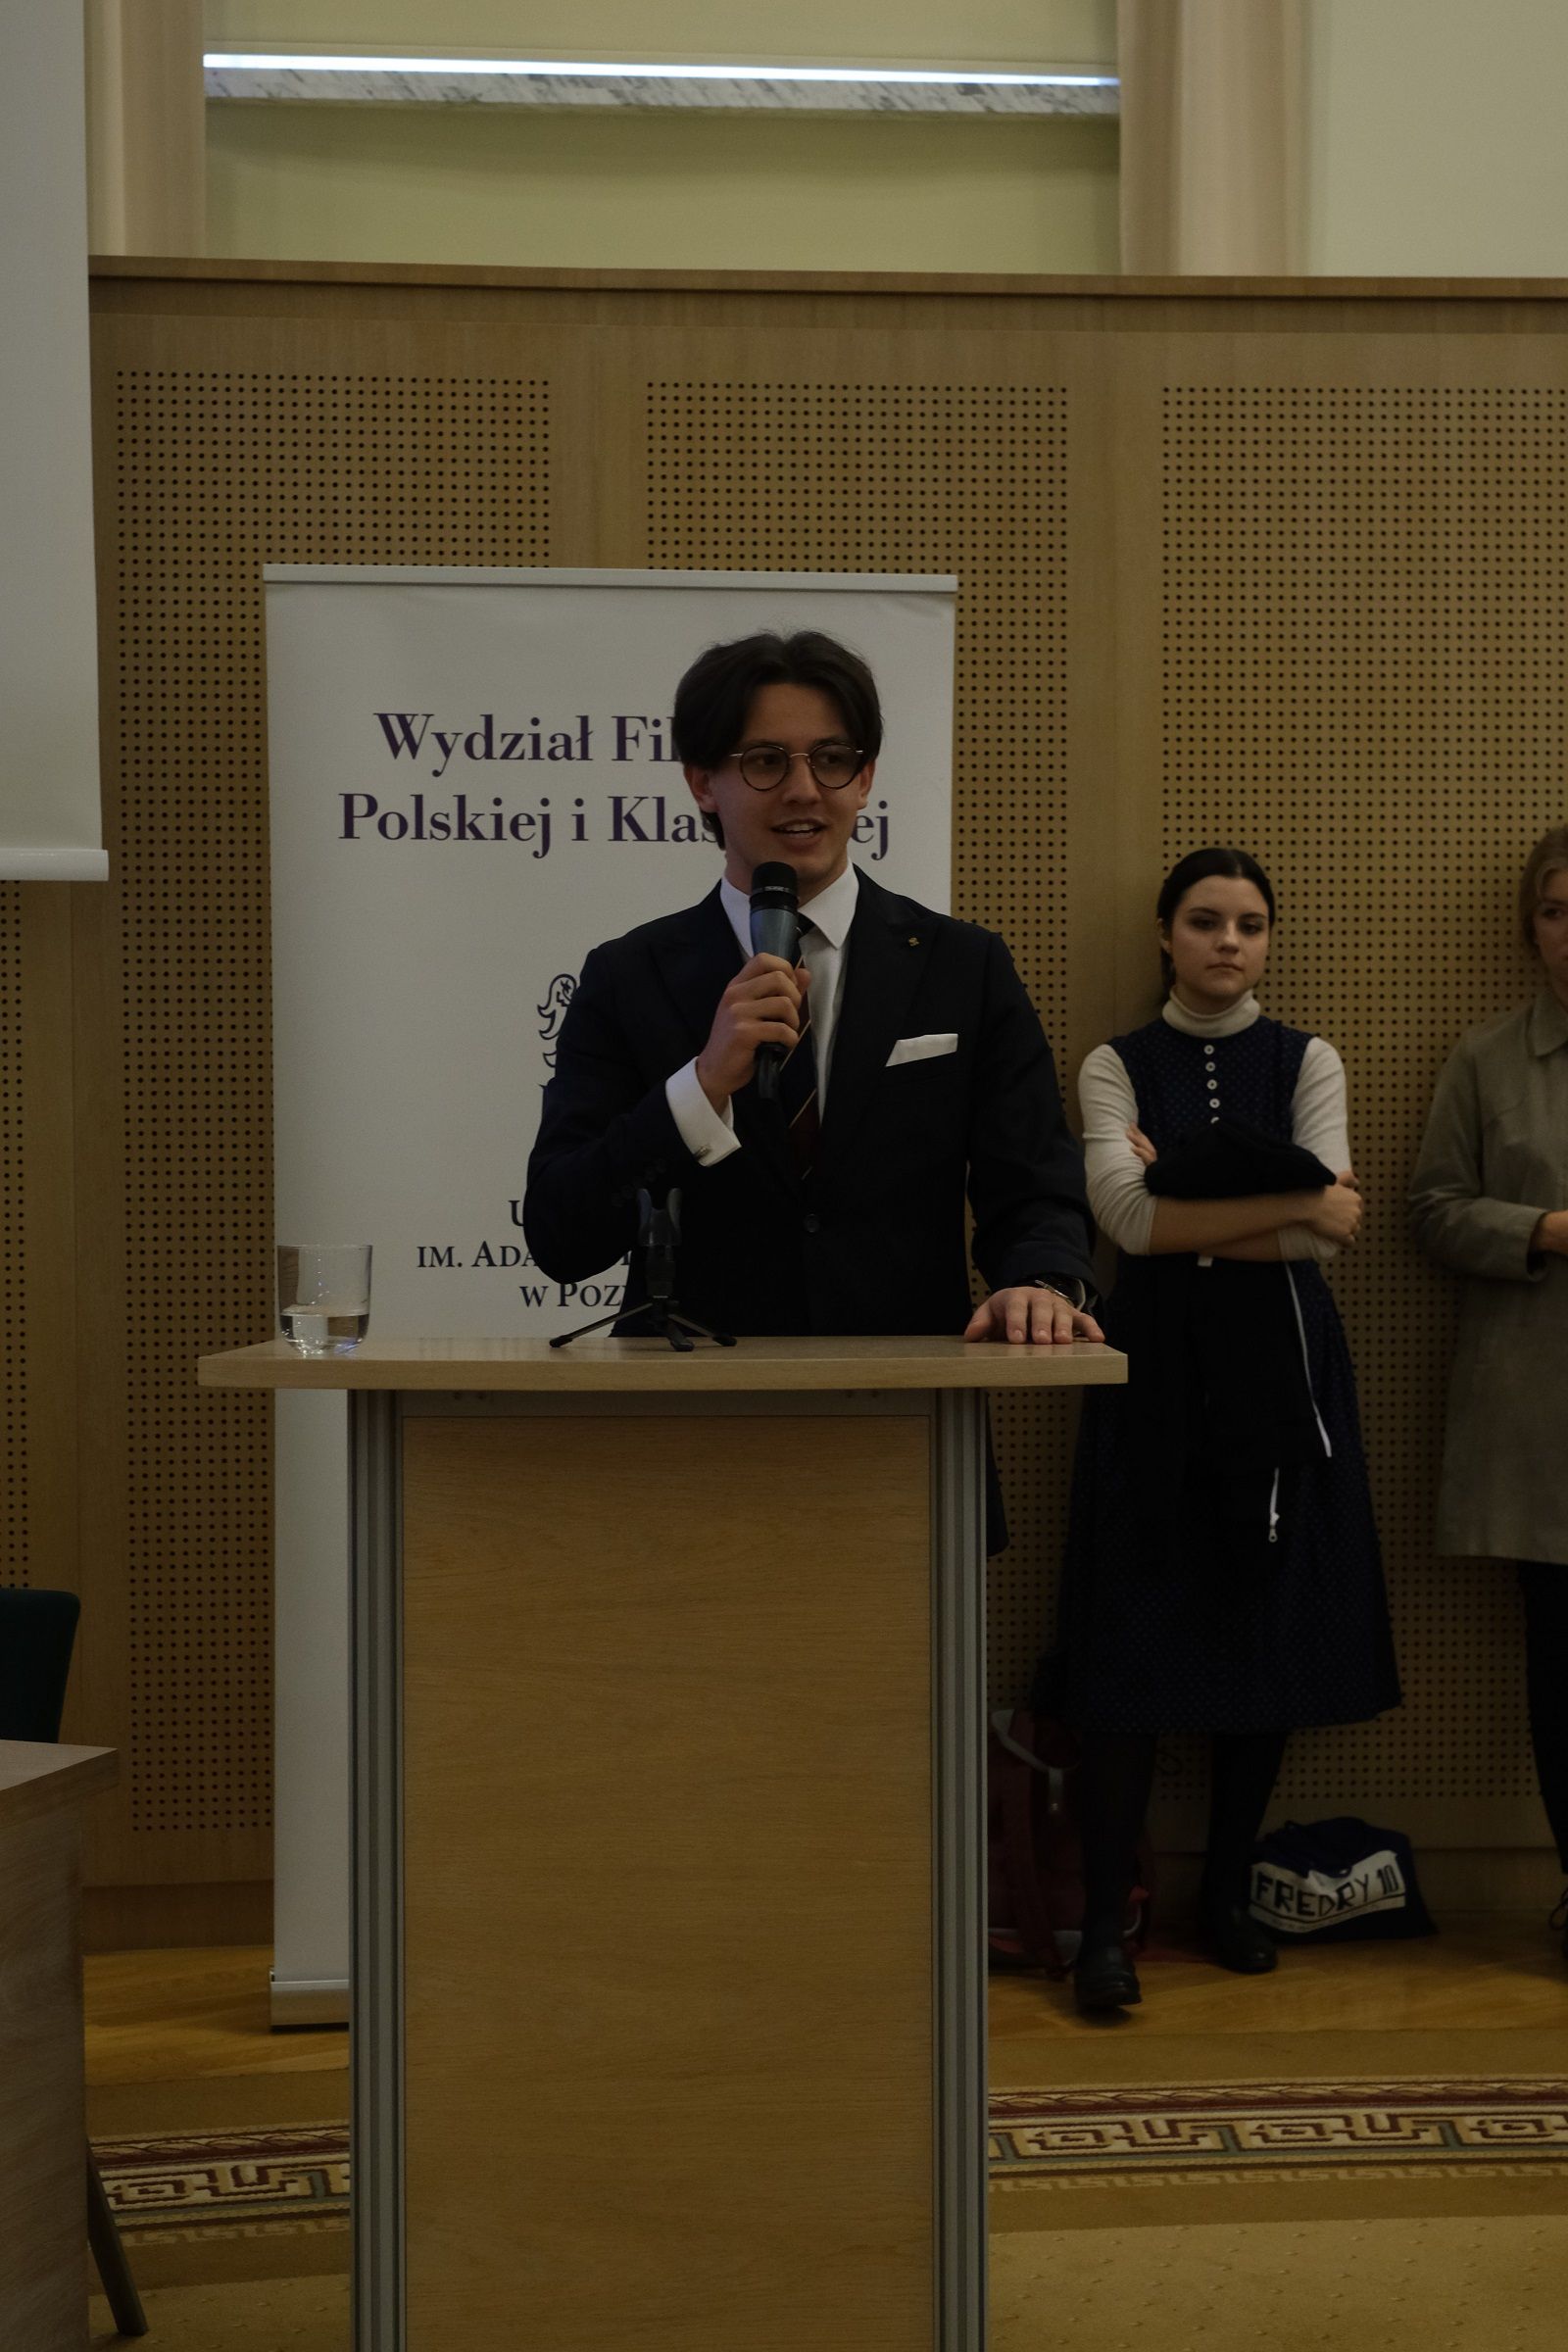 Przemysław Raczyk, Przewodniczący Rady Samorządu Studentów WFPiK, stoi przy mównicy i przemawia do mikrofonu.